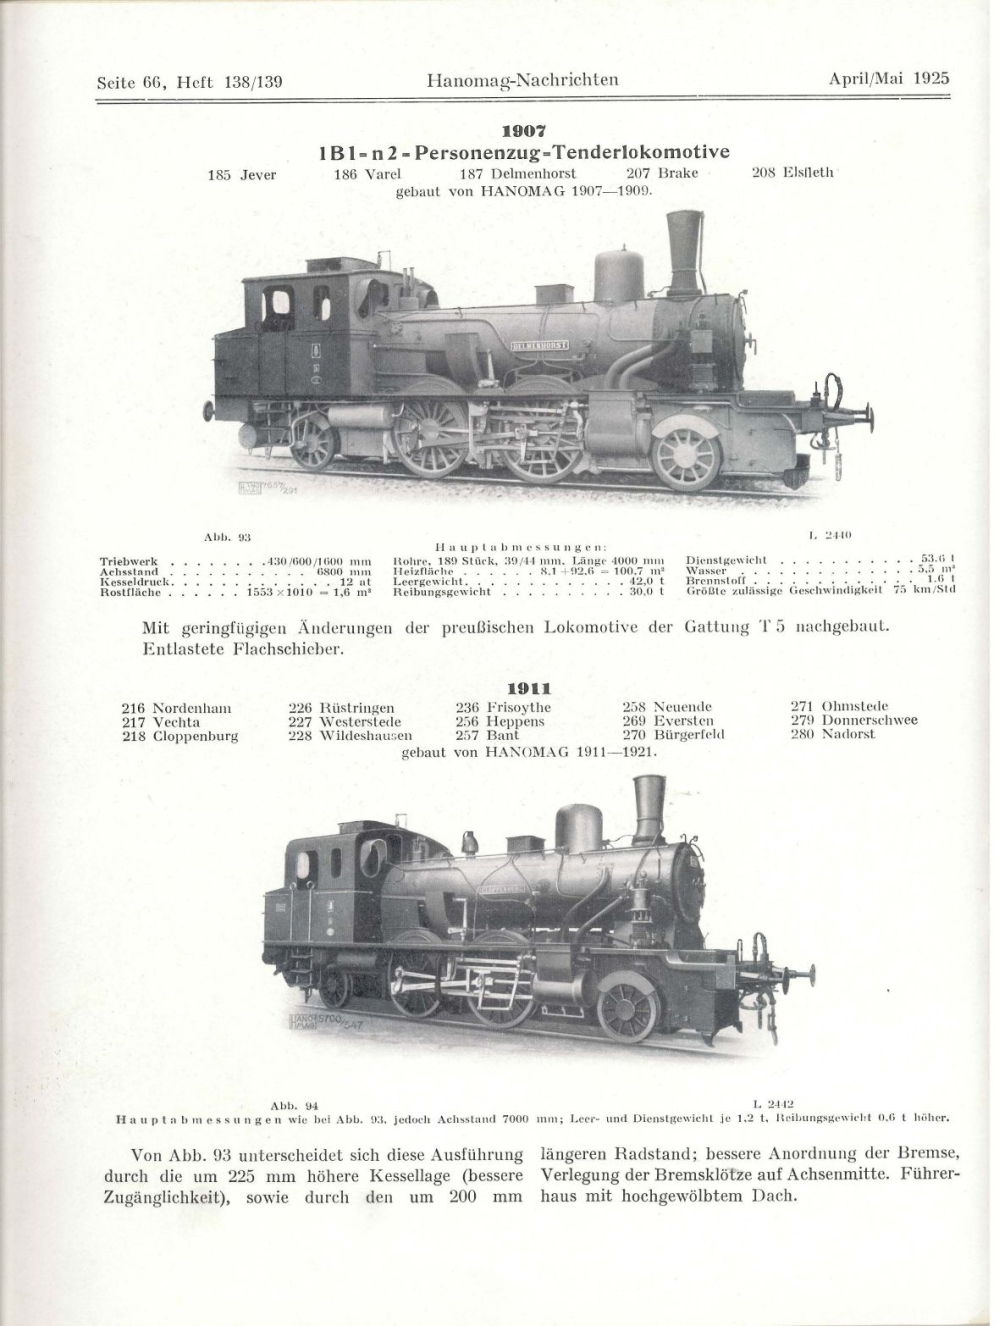 In der Übersicht der Lokomotiven der G.O.E. in den Hanomag-Nachrichten sind die Lokomotiven natürlich auch enthalten